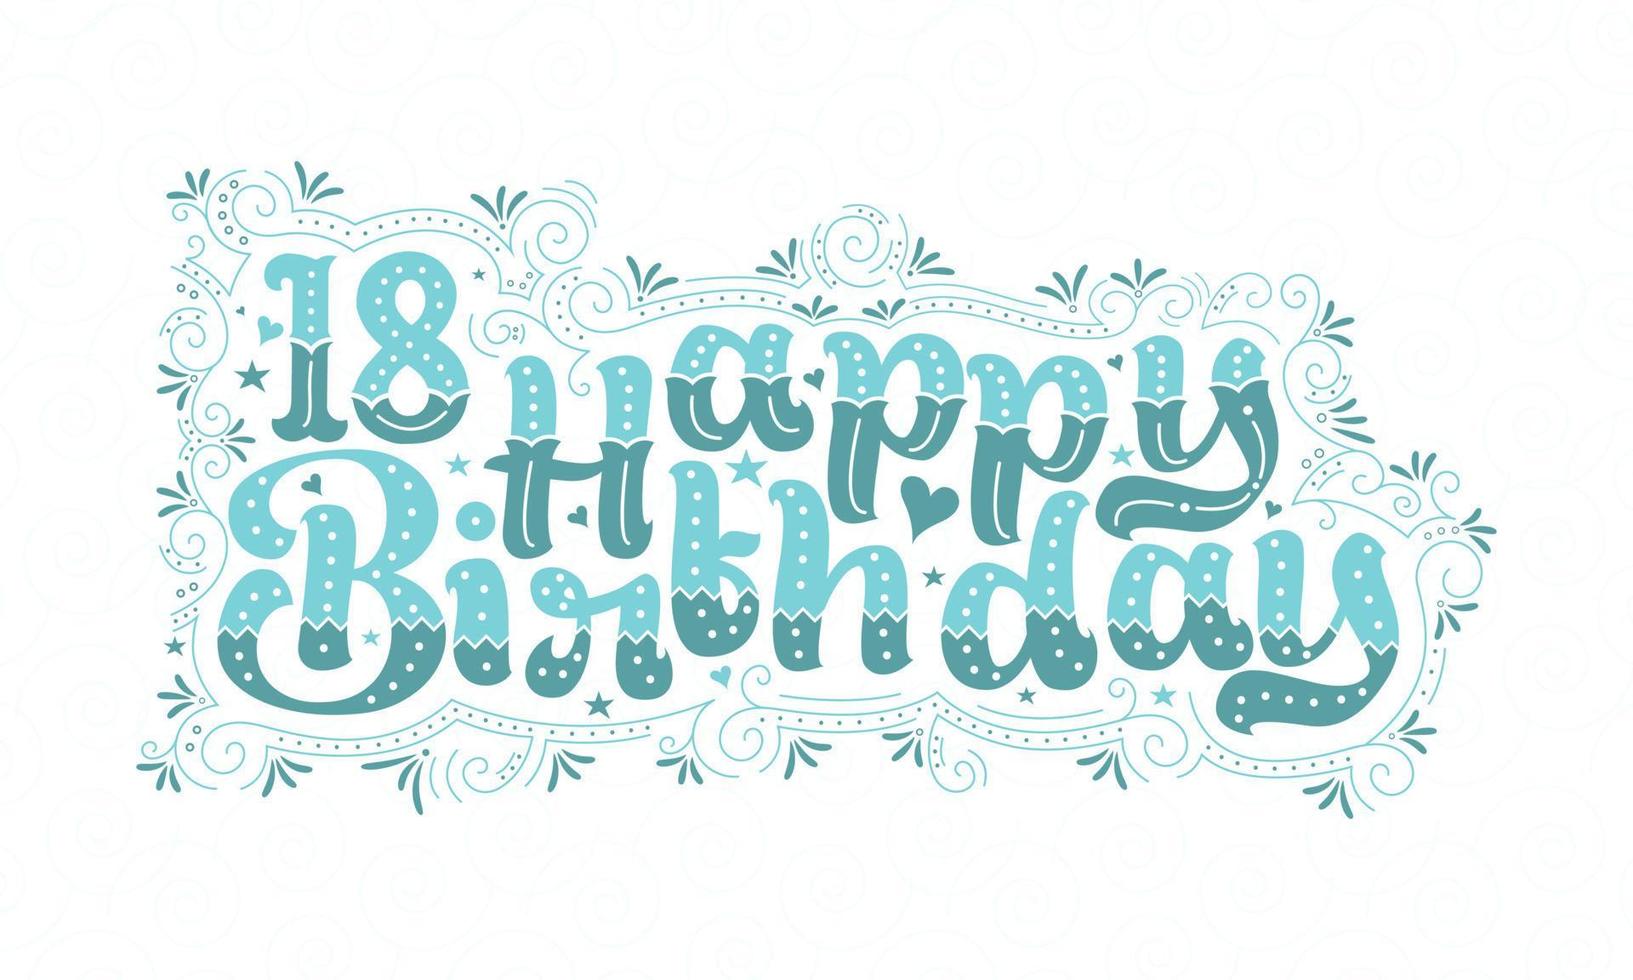 Letras de feliz cumpleaños 18, hermoso diseño tipográfico de cumpleaños de 18 años con puntos acuáticos, líneas y hojas. vector